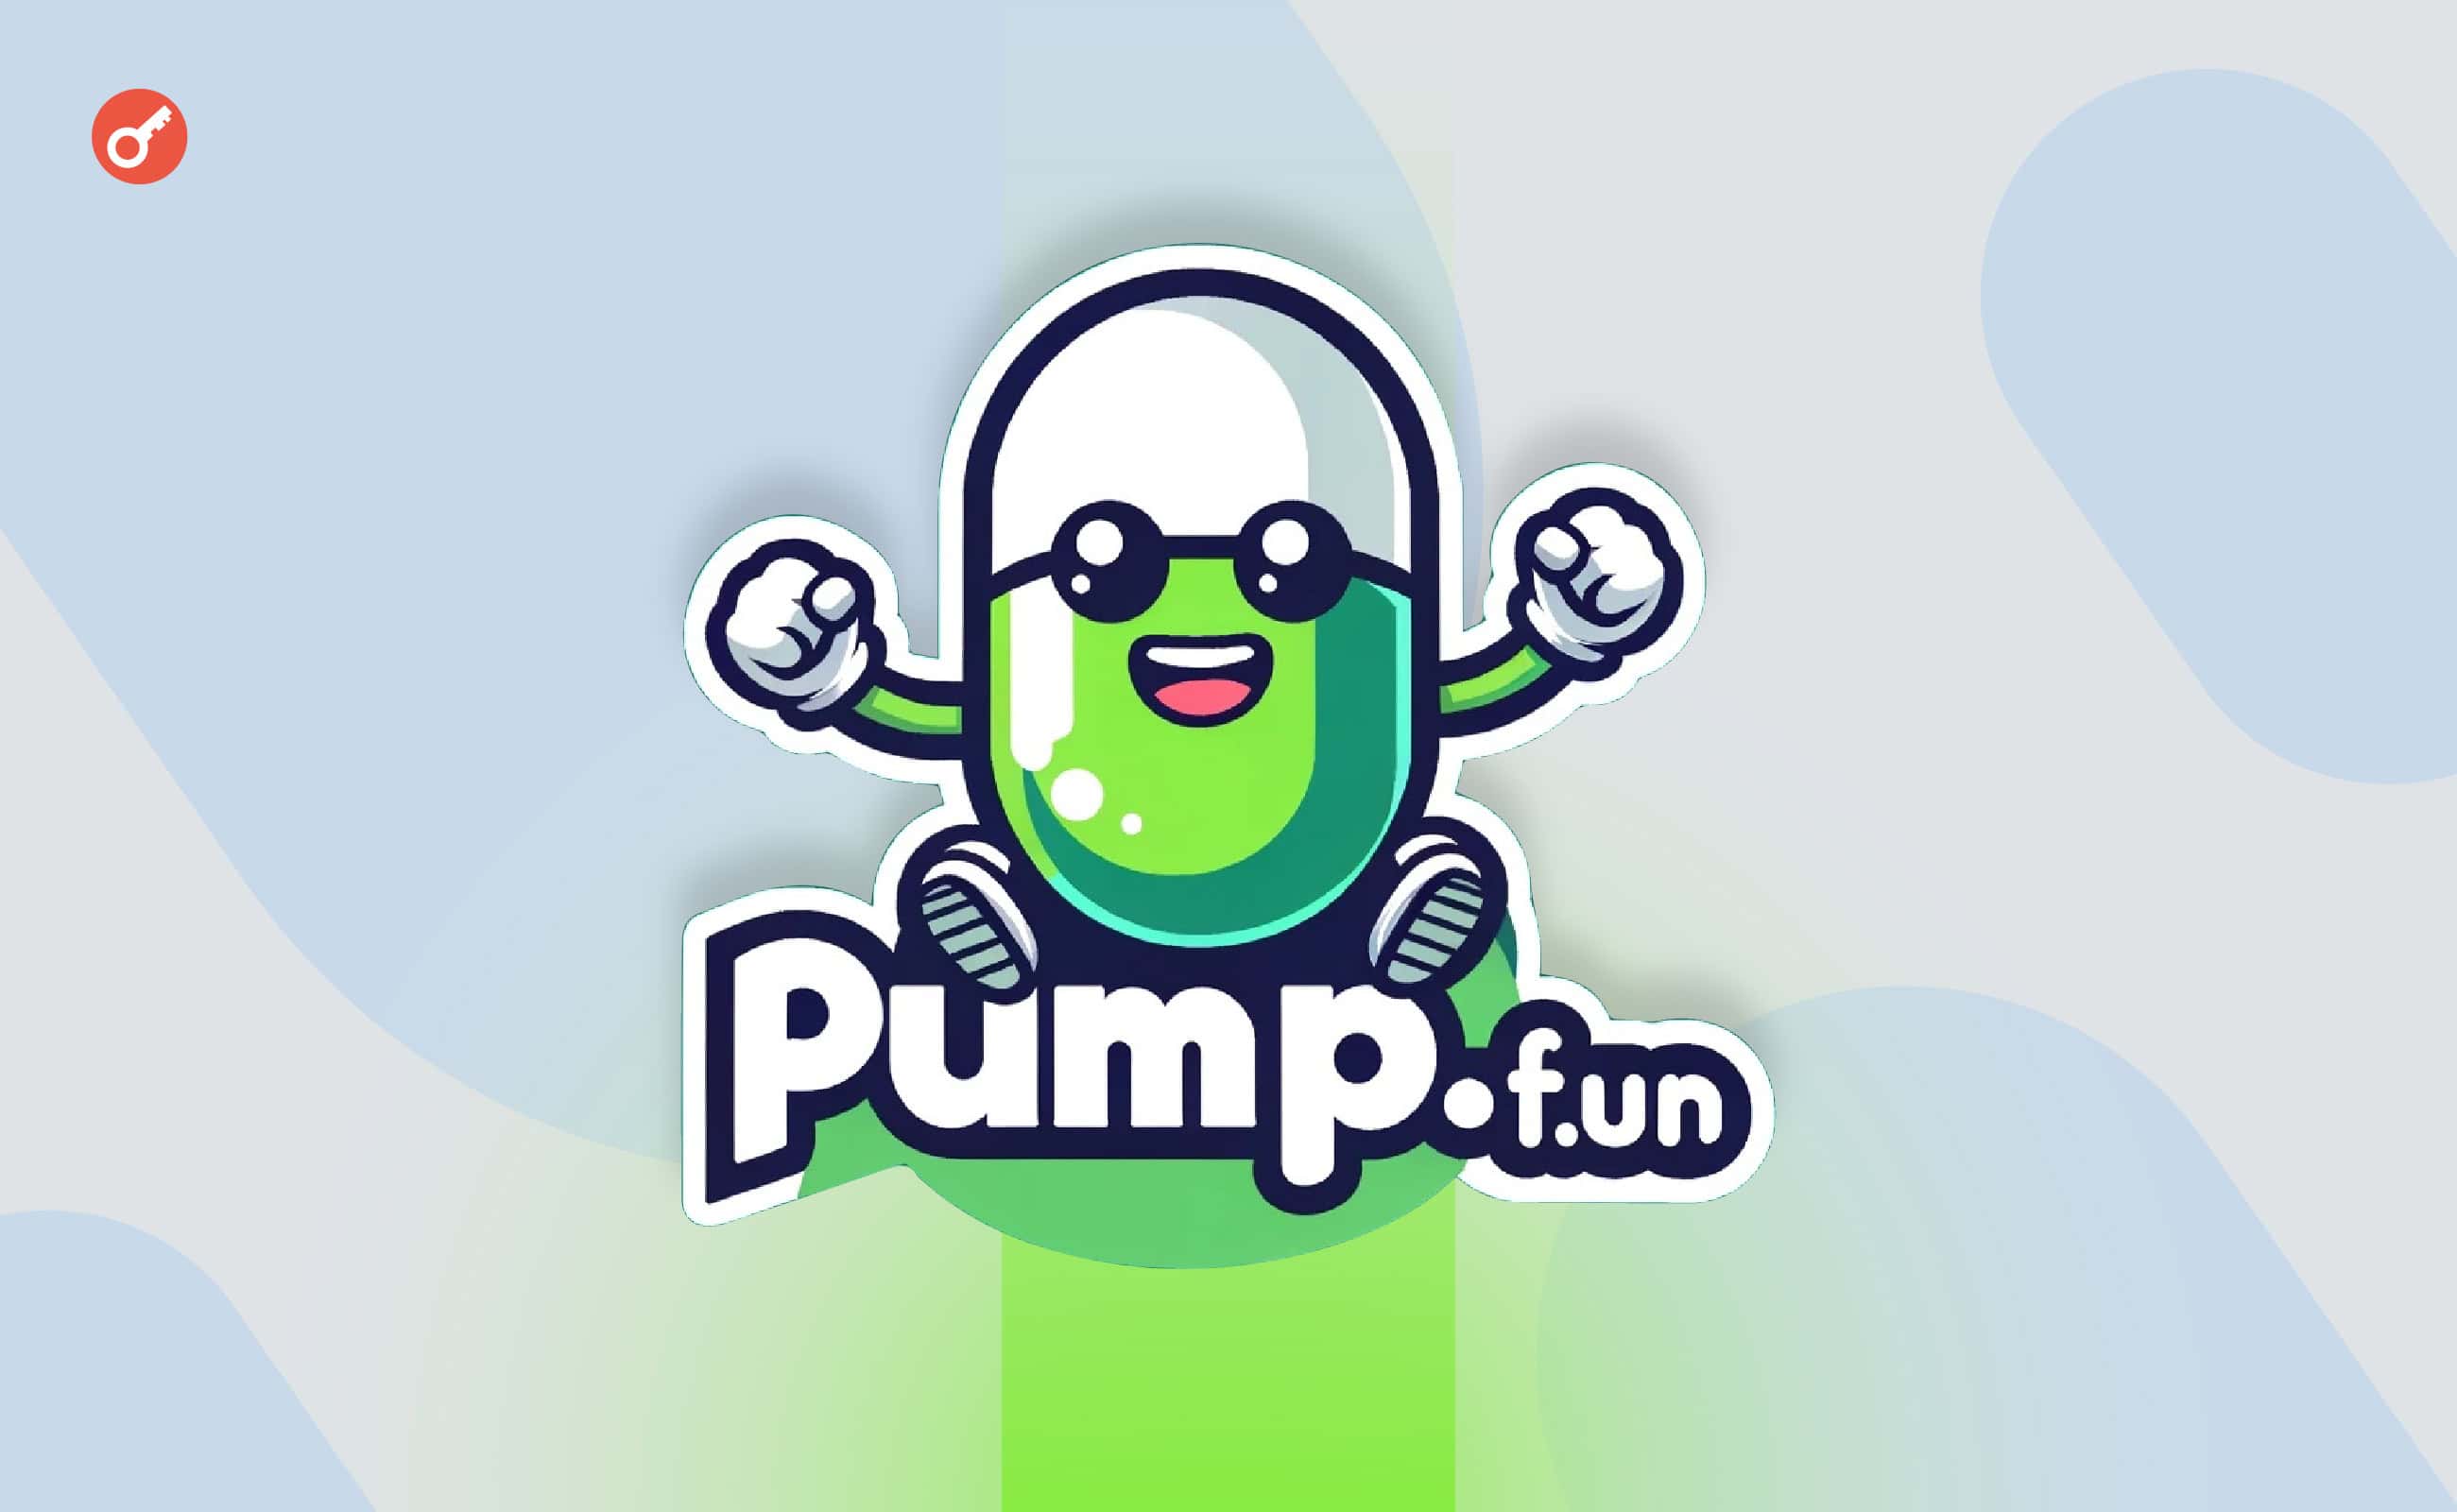 Доход Pump.fun обновил исторический максимум на фоне высокого спроса на мемкоины. Заглавный коллаж новости.